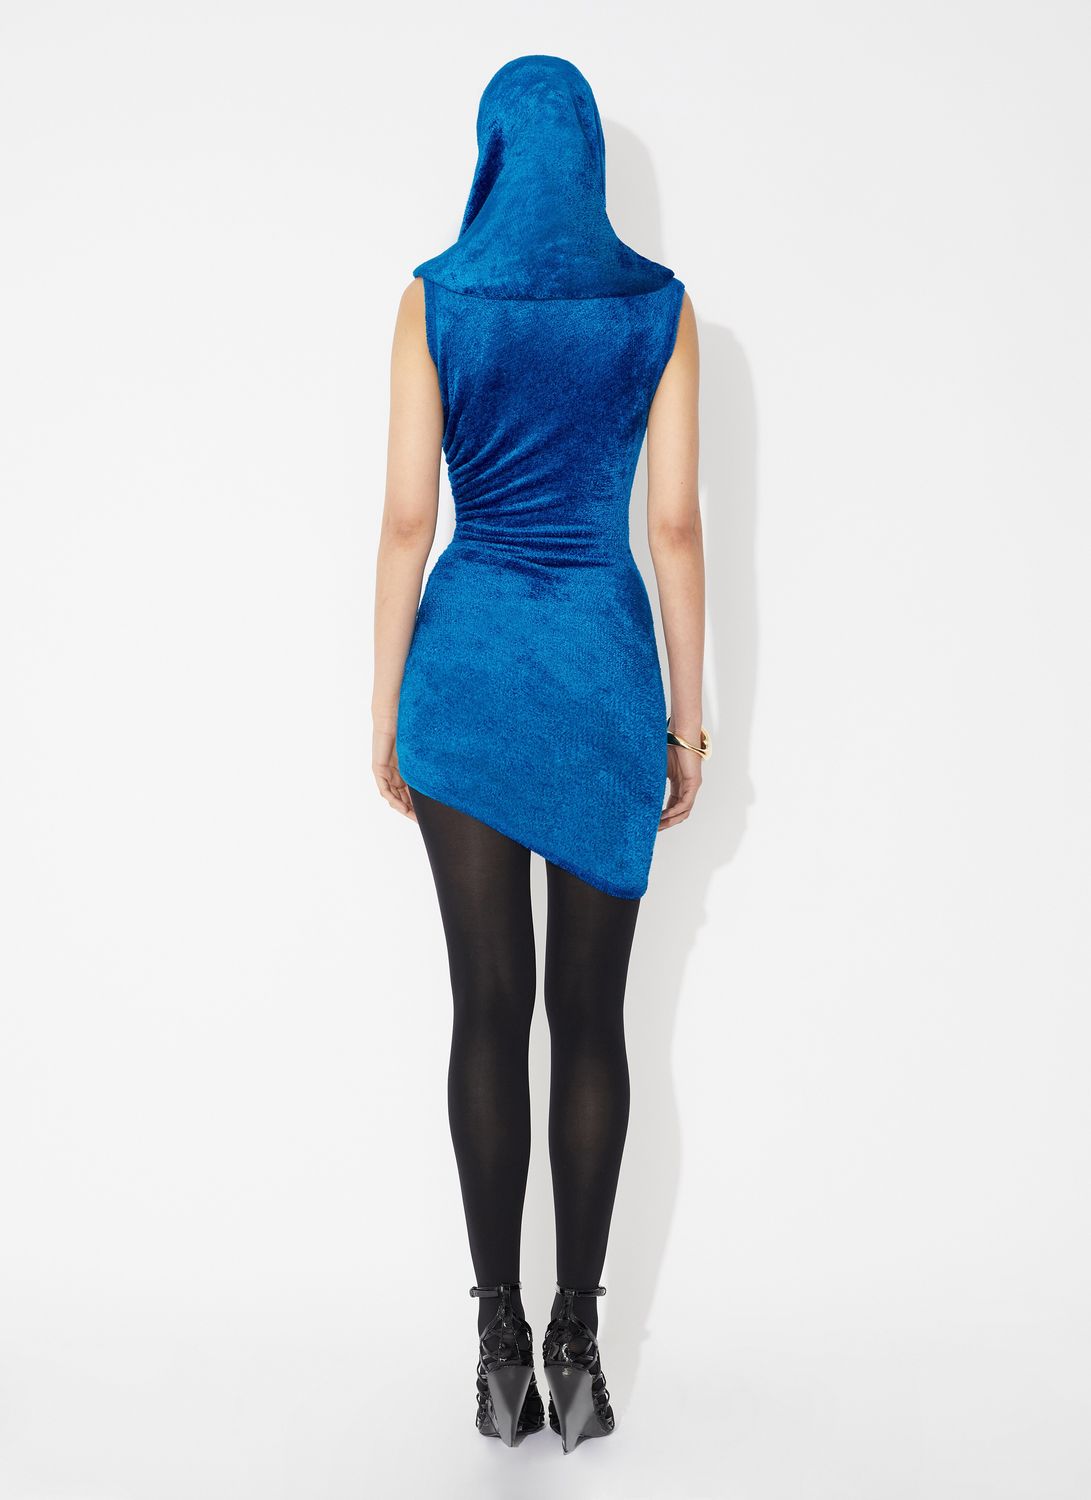 Bright Blue Shiny Velvet Mini Hood Dress (女士亮蓝色绒面迷你连帽连衣裙)